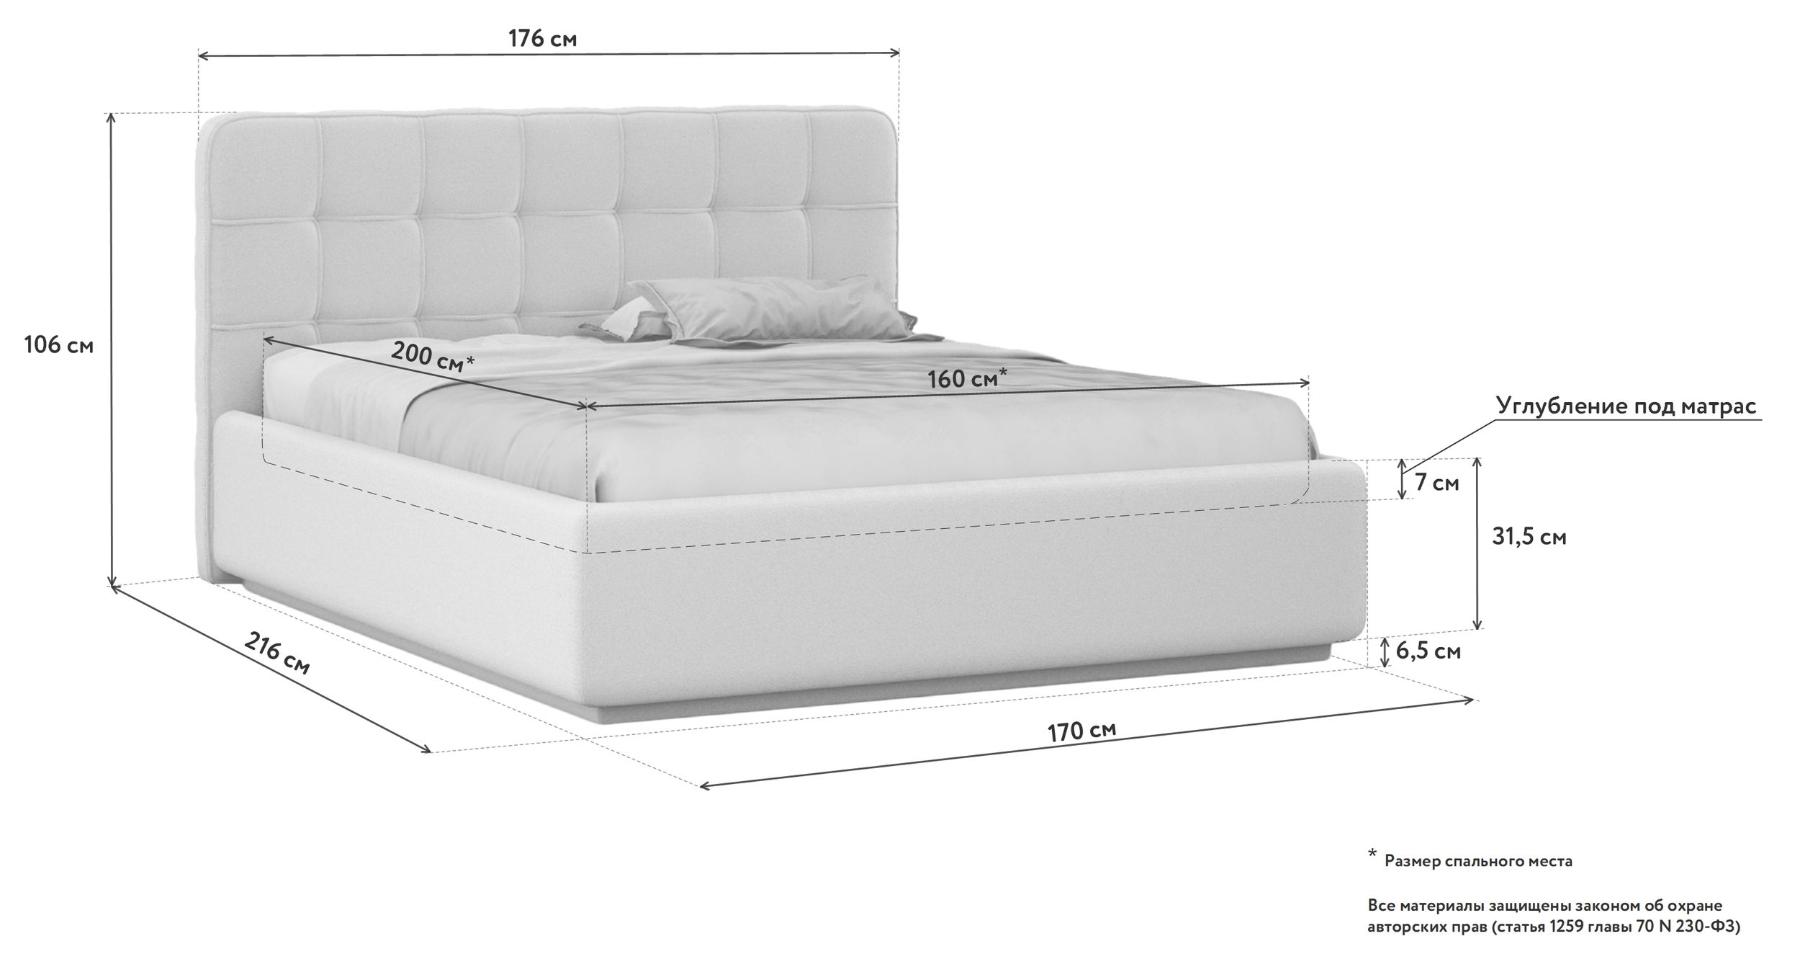 Размер белья для кровати 160х200